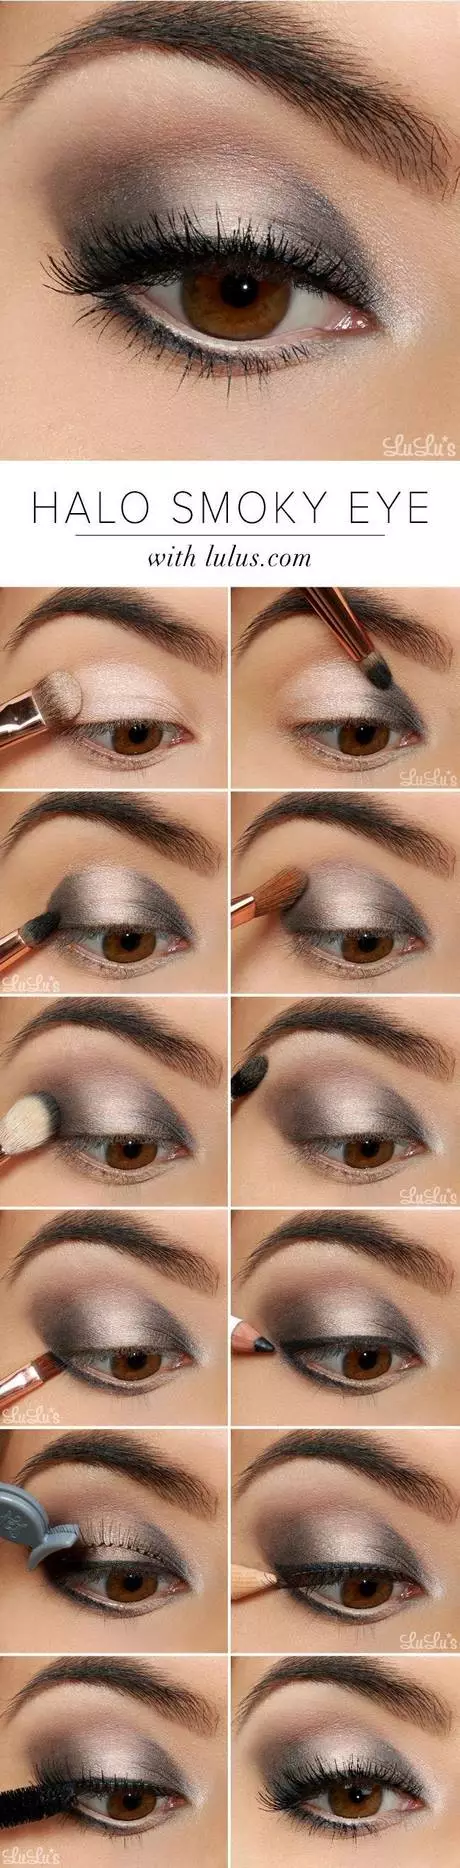 eye-makeup-pictures-step-by-step-61_6-12 Oogmake - up foto ' s stap voor stap